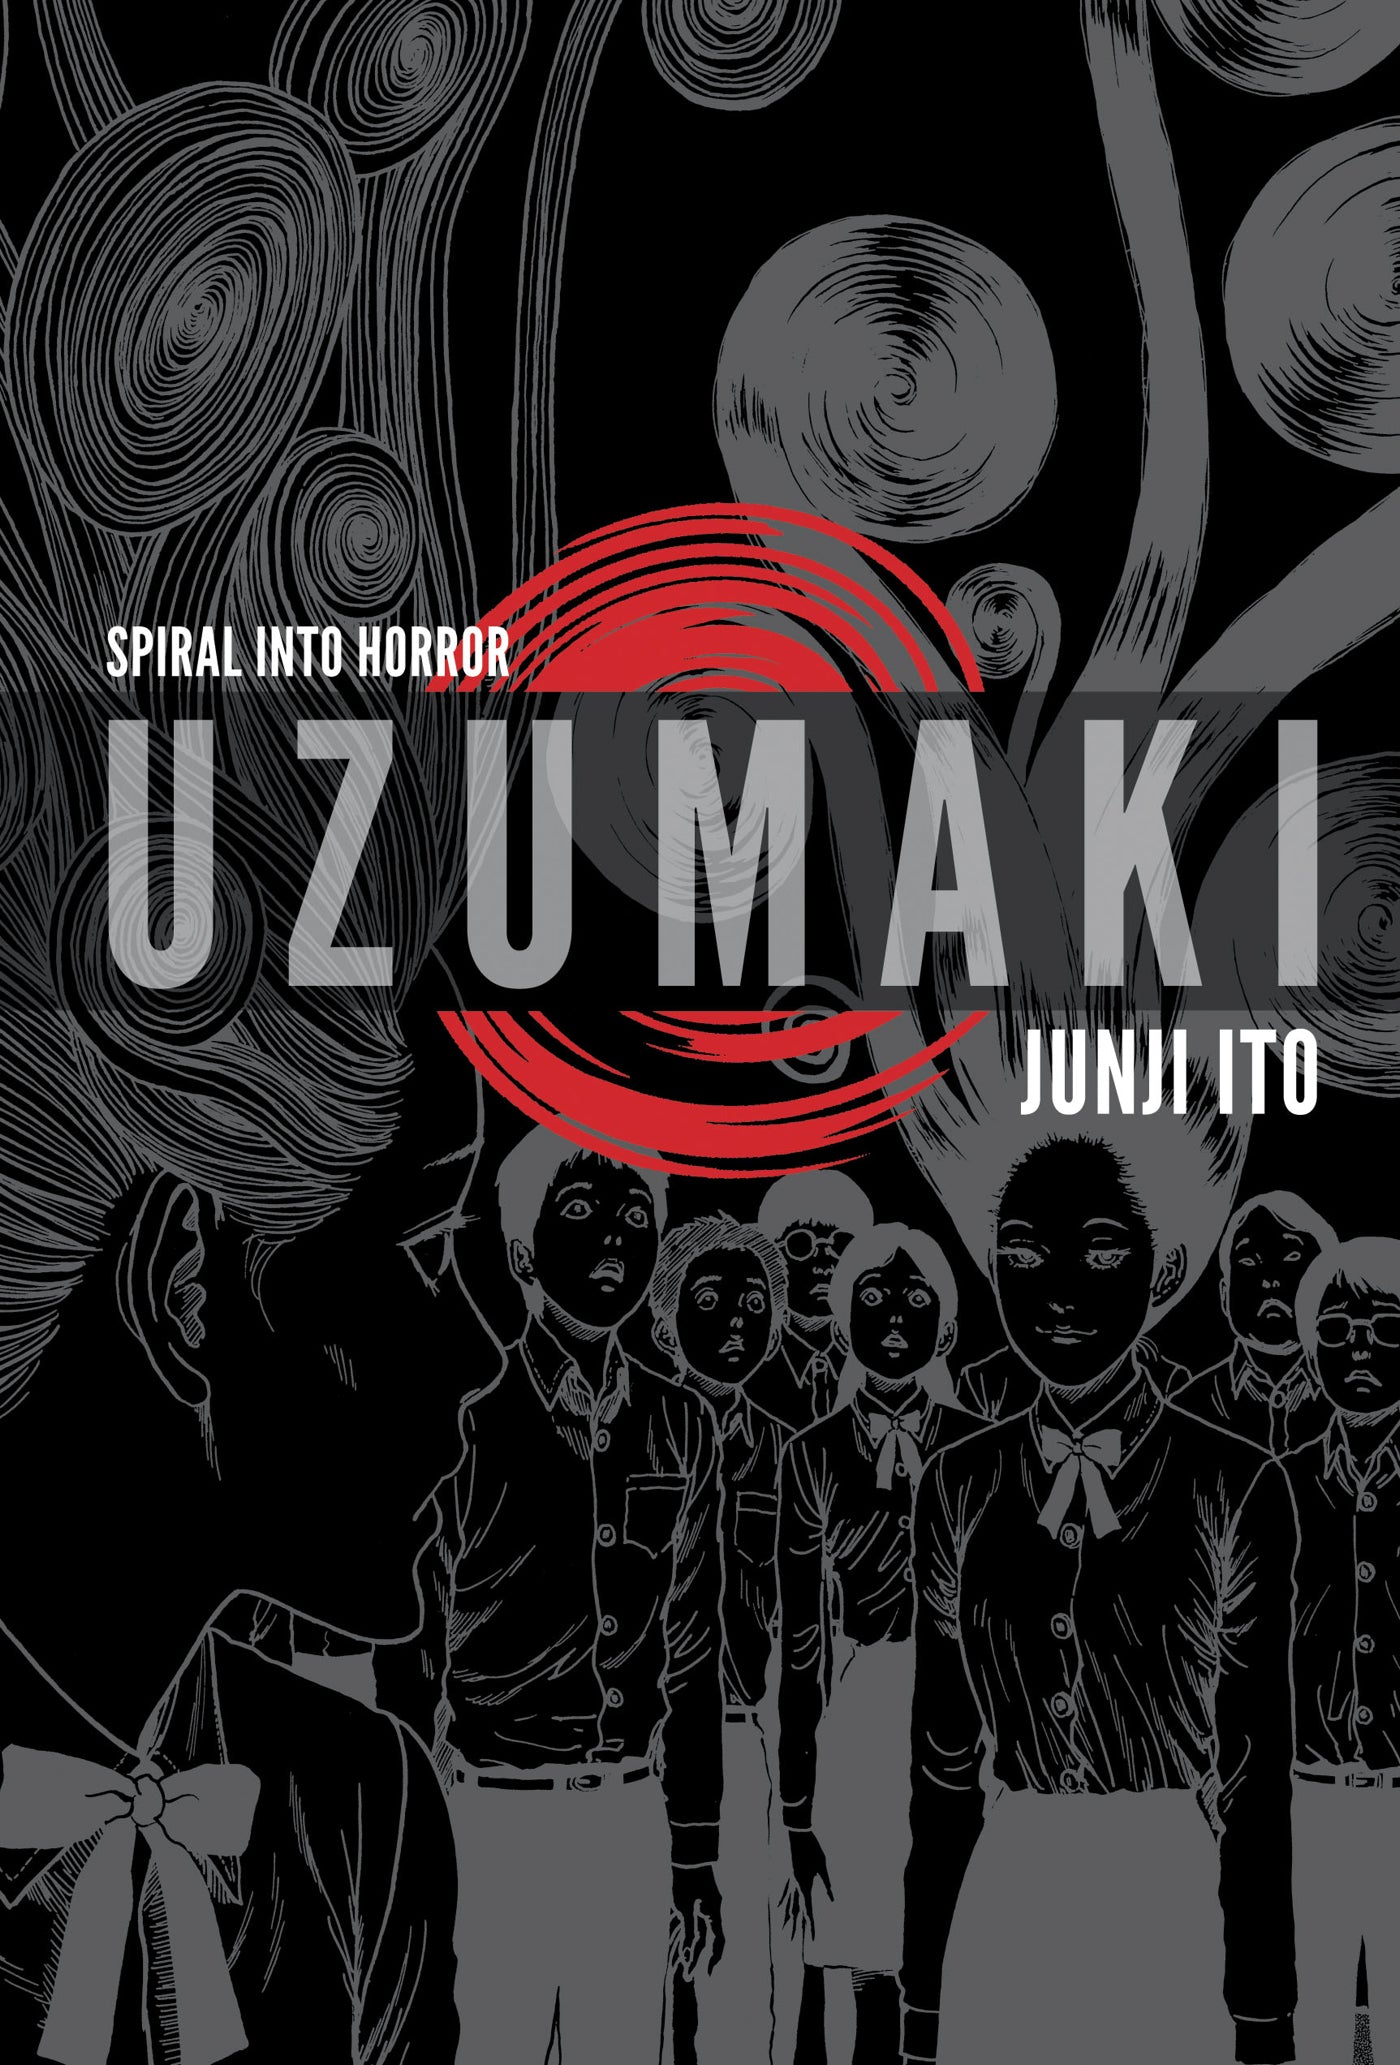 Junji Ito - Uzumaki (3-in-1 Deluxe Edition)